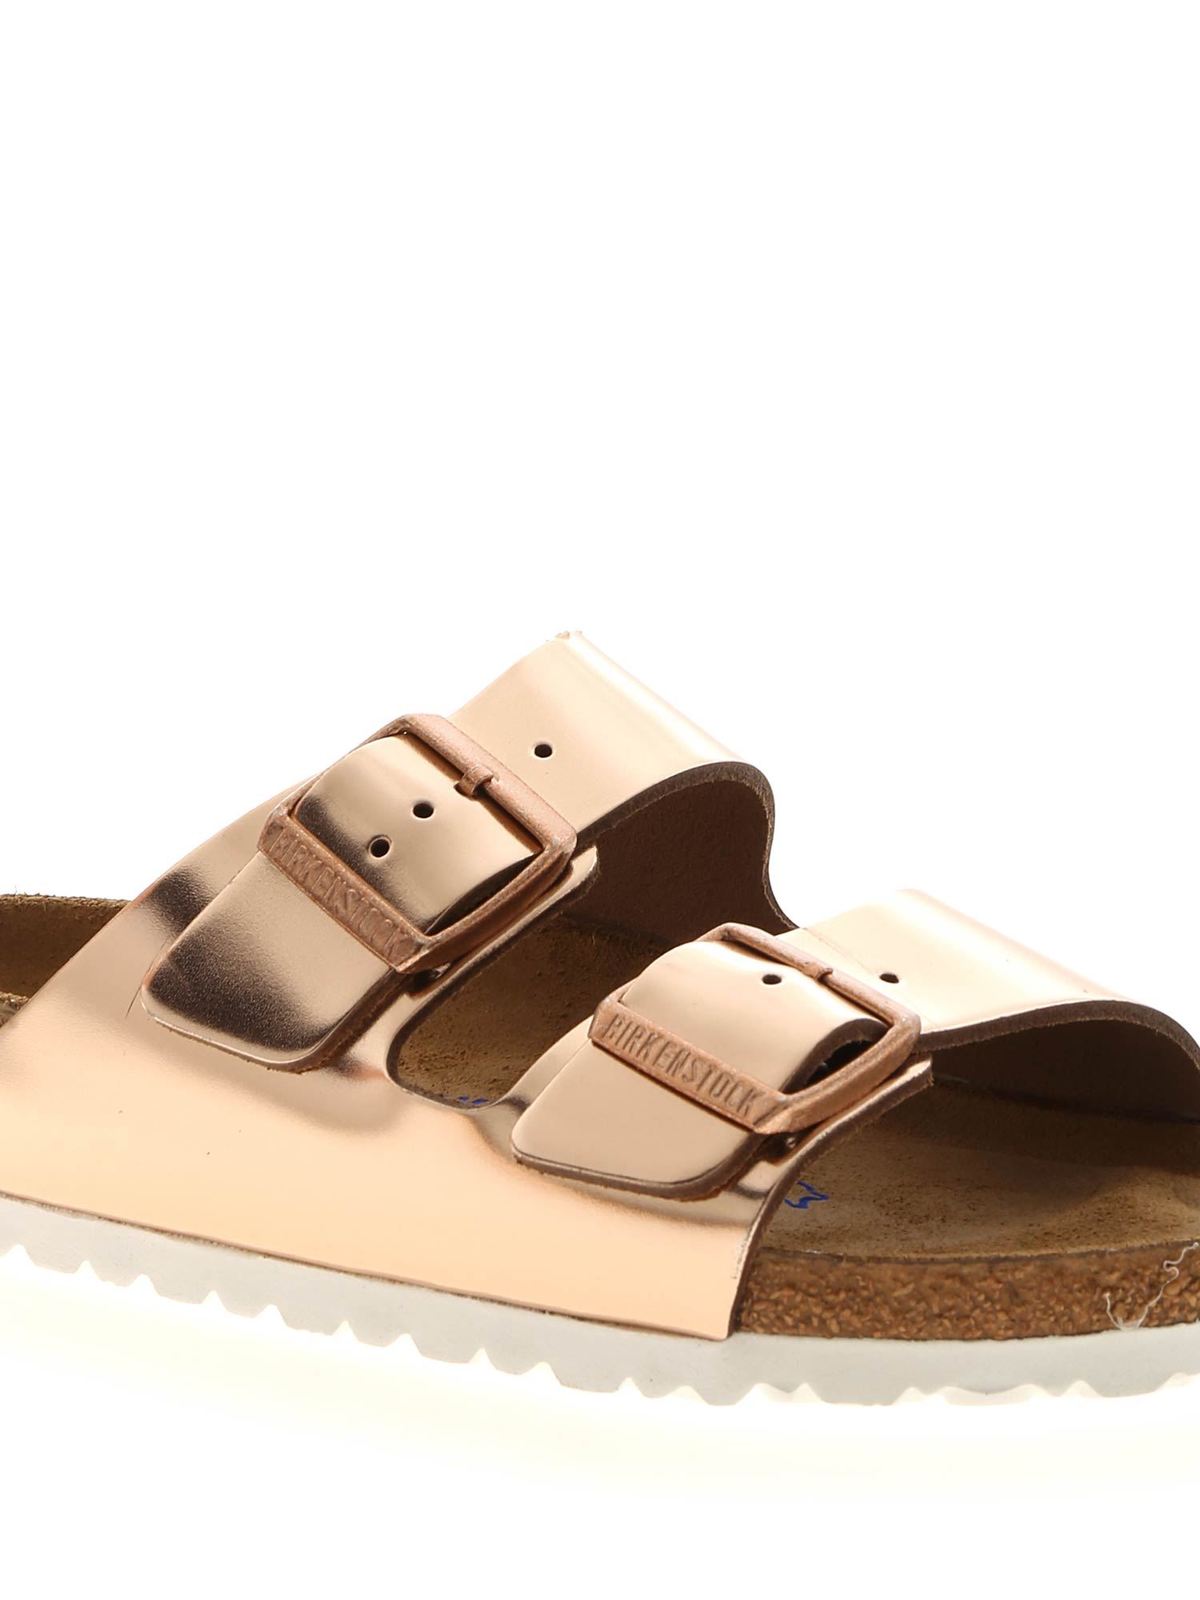 Interpersoonlijk Janice bijnaam Sandals Birkenstock - Arizona BS sandals in copper color - 0952093